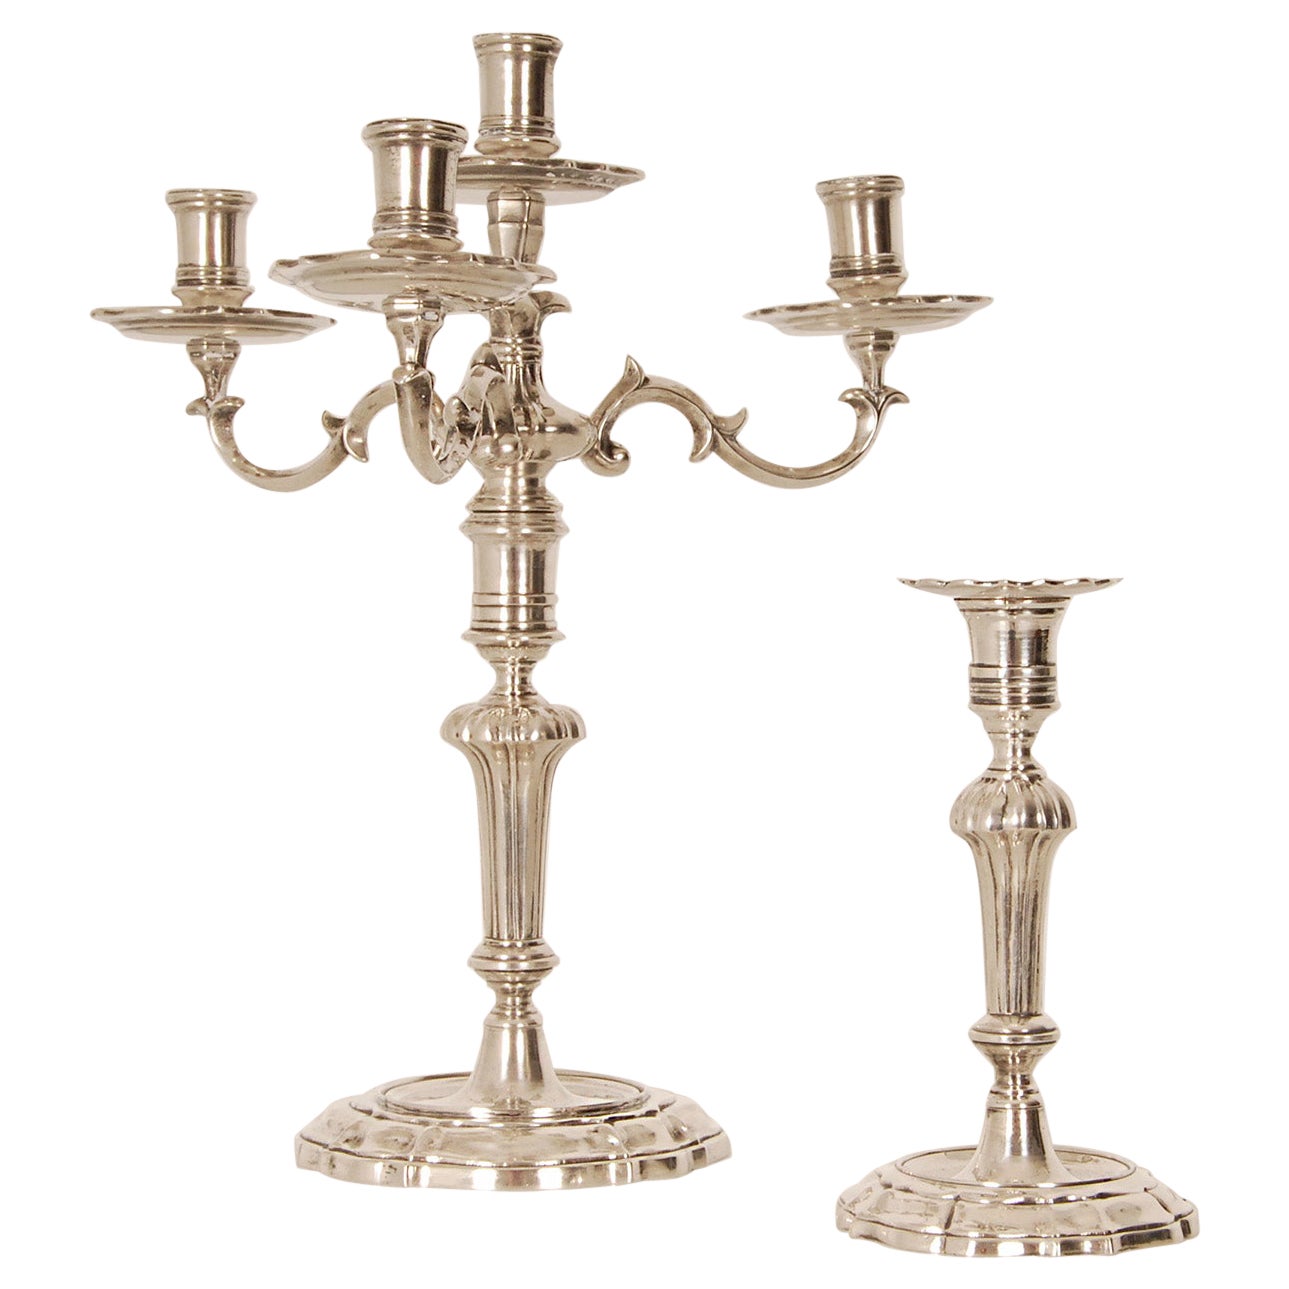 Paire de chandeliers italiens rococo en argent sterling du 18ème siècle de Venise